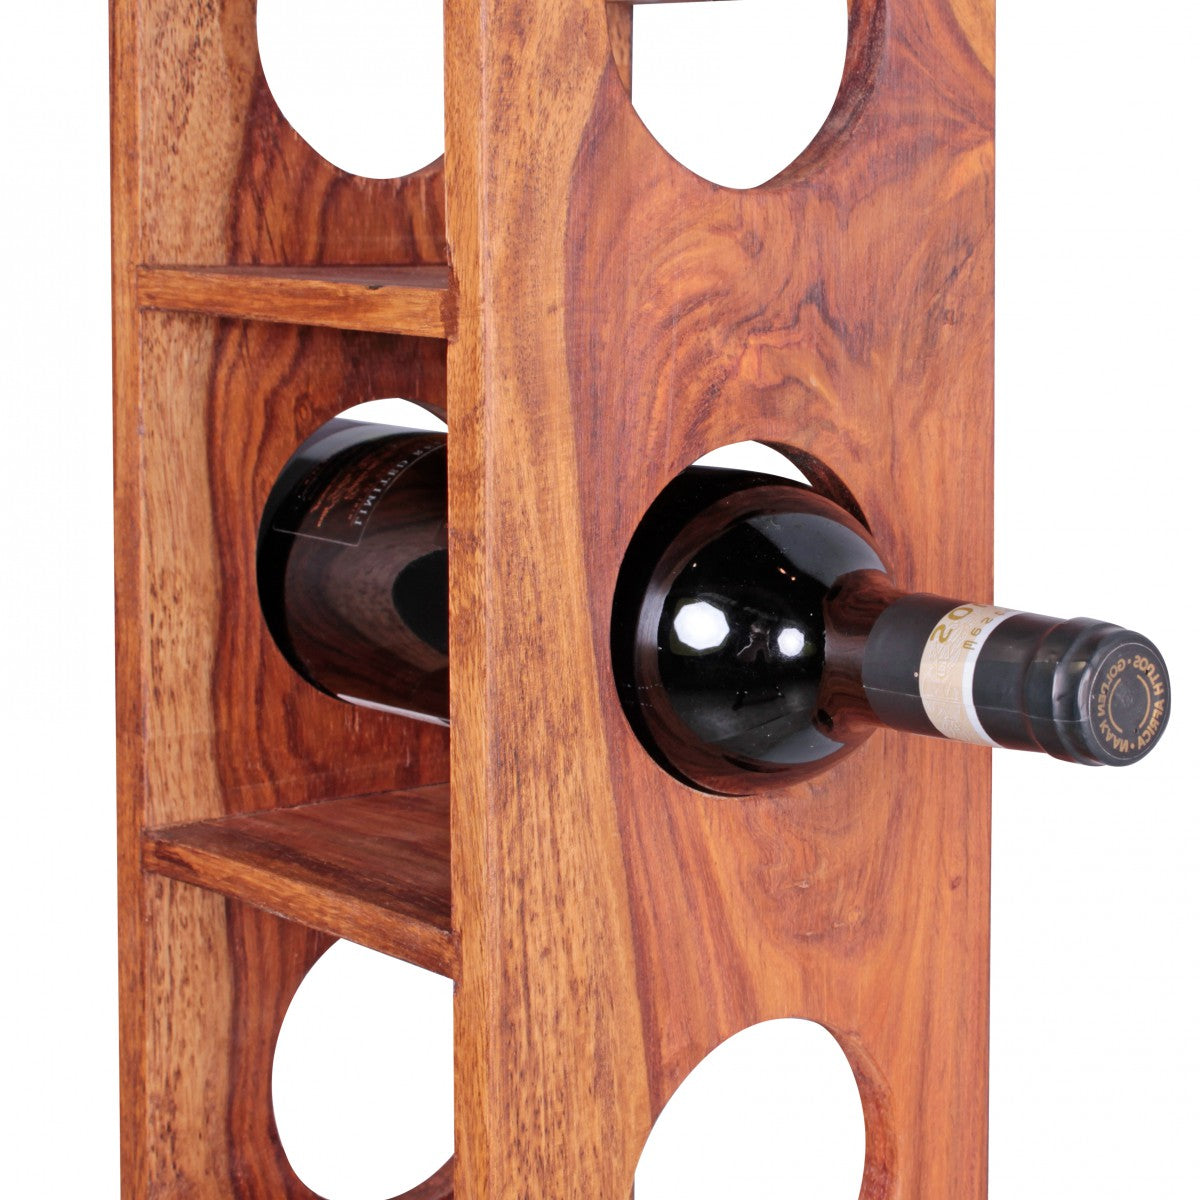 Casier à vin en bois massif de Nancy - Bois massif - Acacia - Sheesham - 5 bouteilles - 70cm - Porte-vin